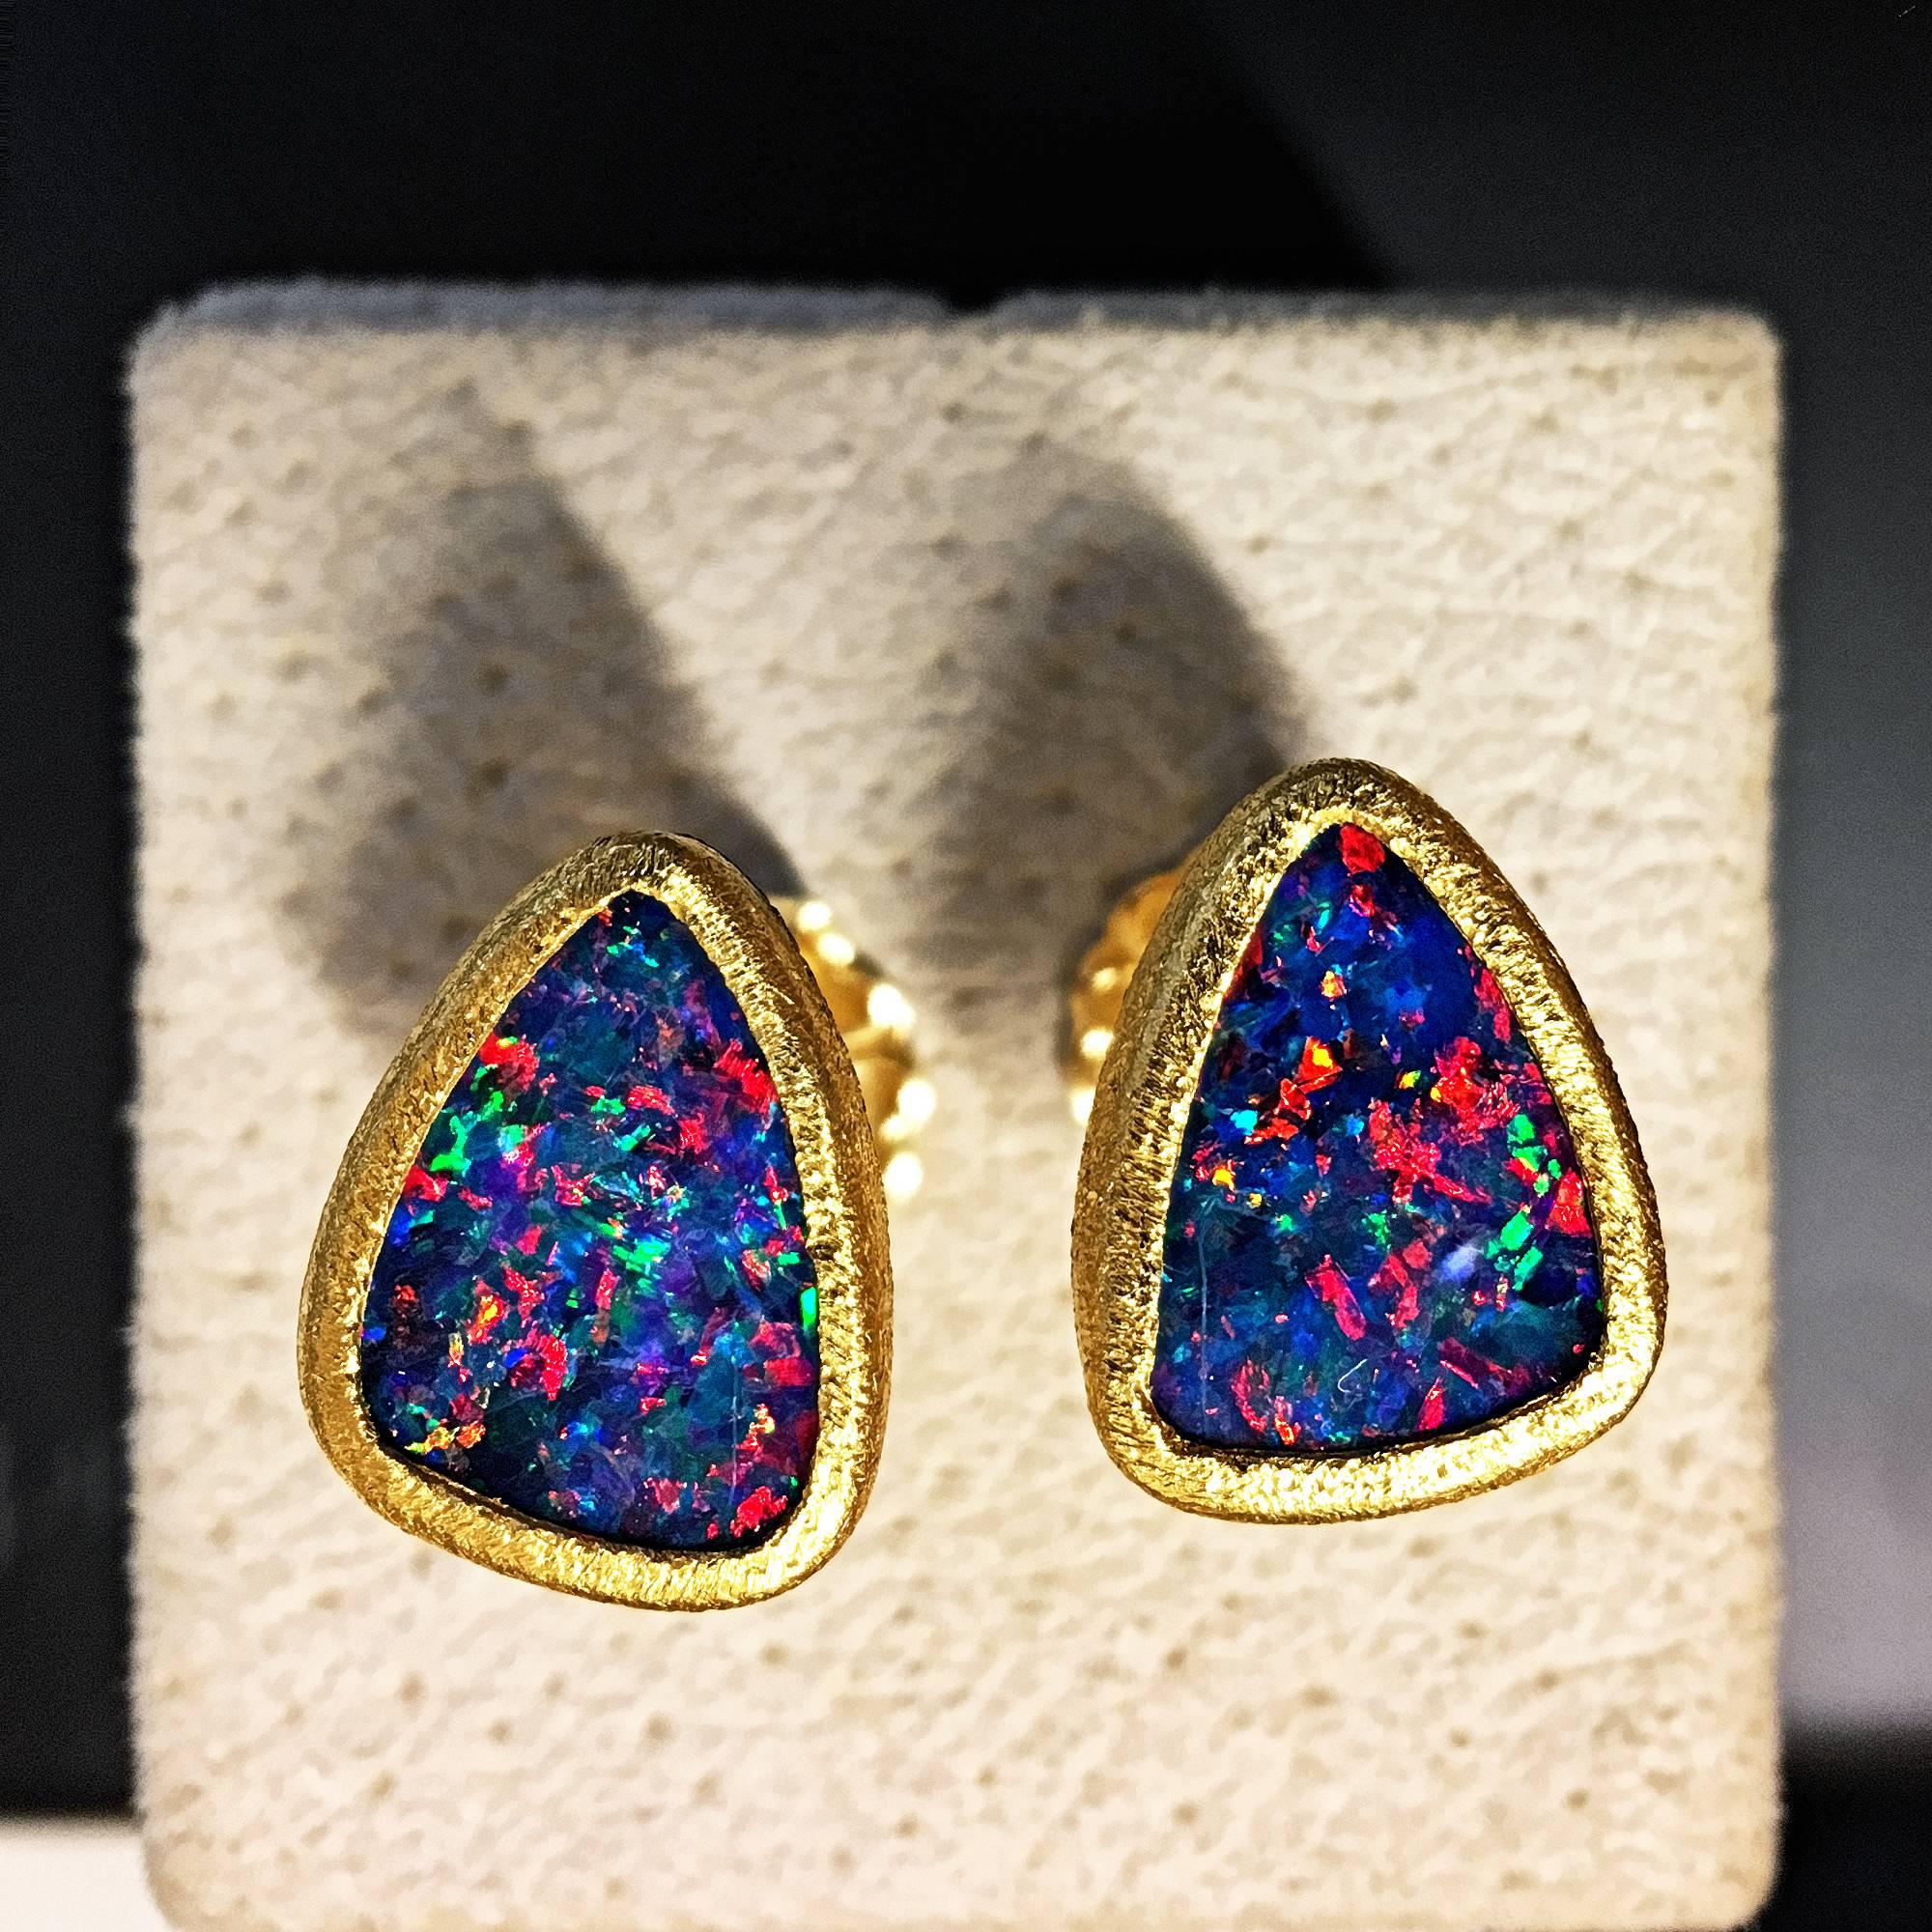 Artist Devta Doolan Violet Blue Opal Doublet Multicolored Fire Confetti Stud Earrings